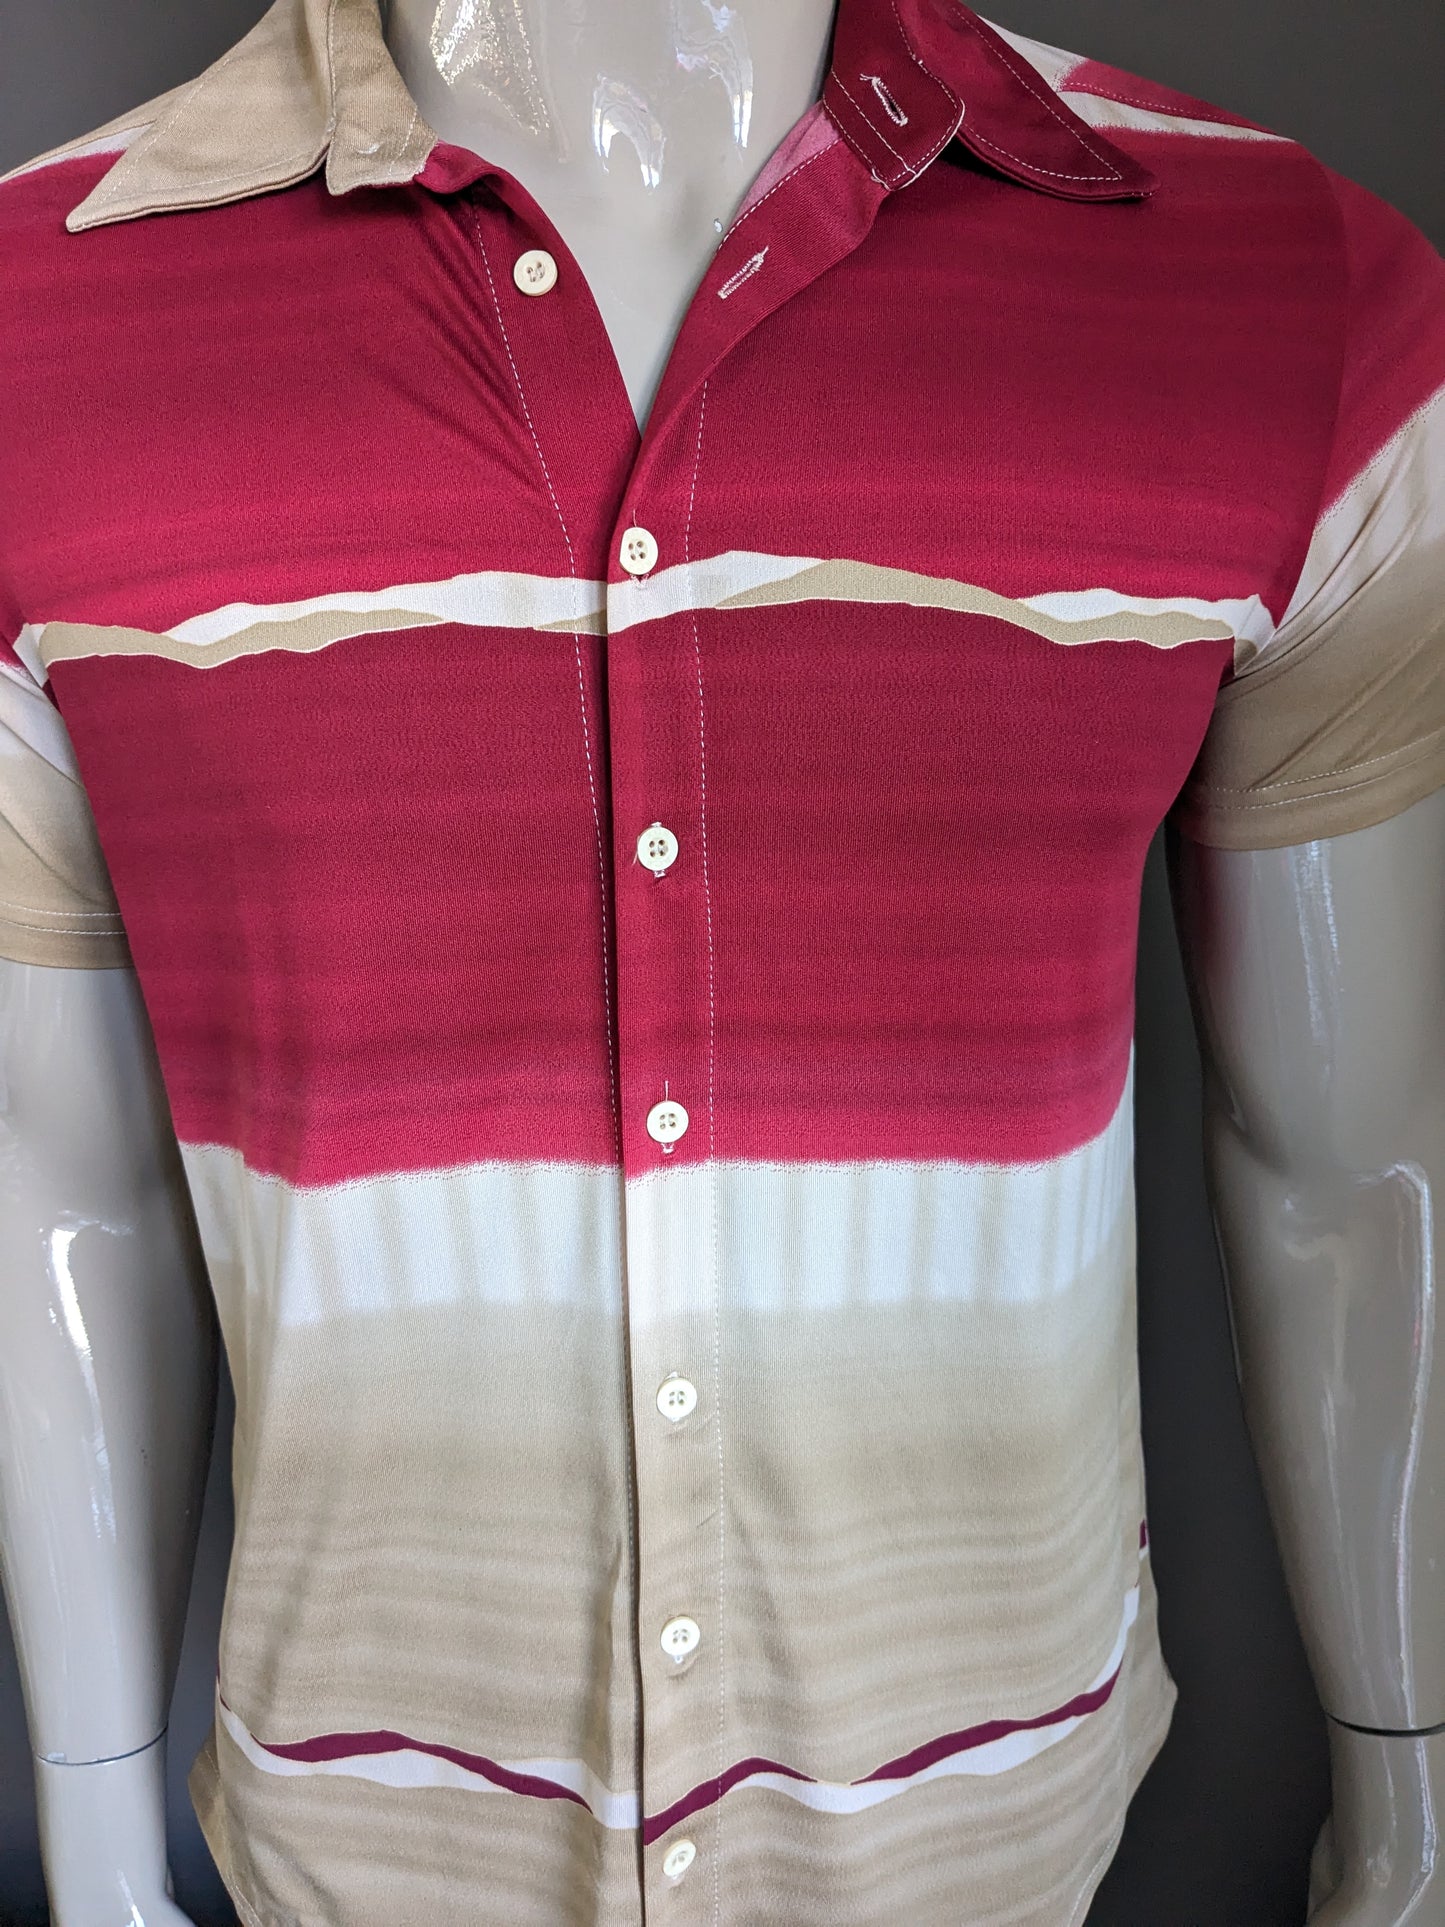 Camisa CSC vintage manga corta. Beige marrón de color rojo. Tamaño L. estiramiento.